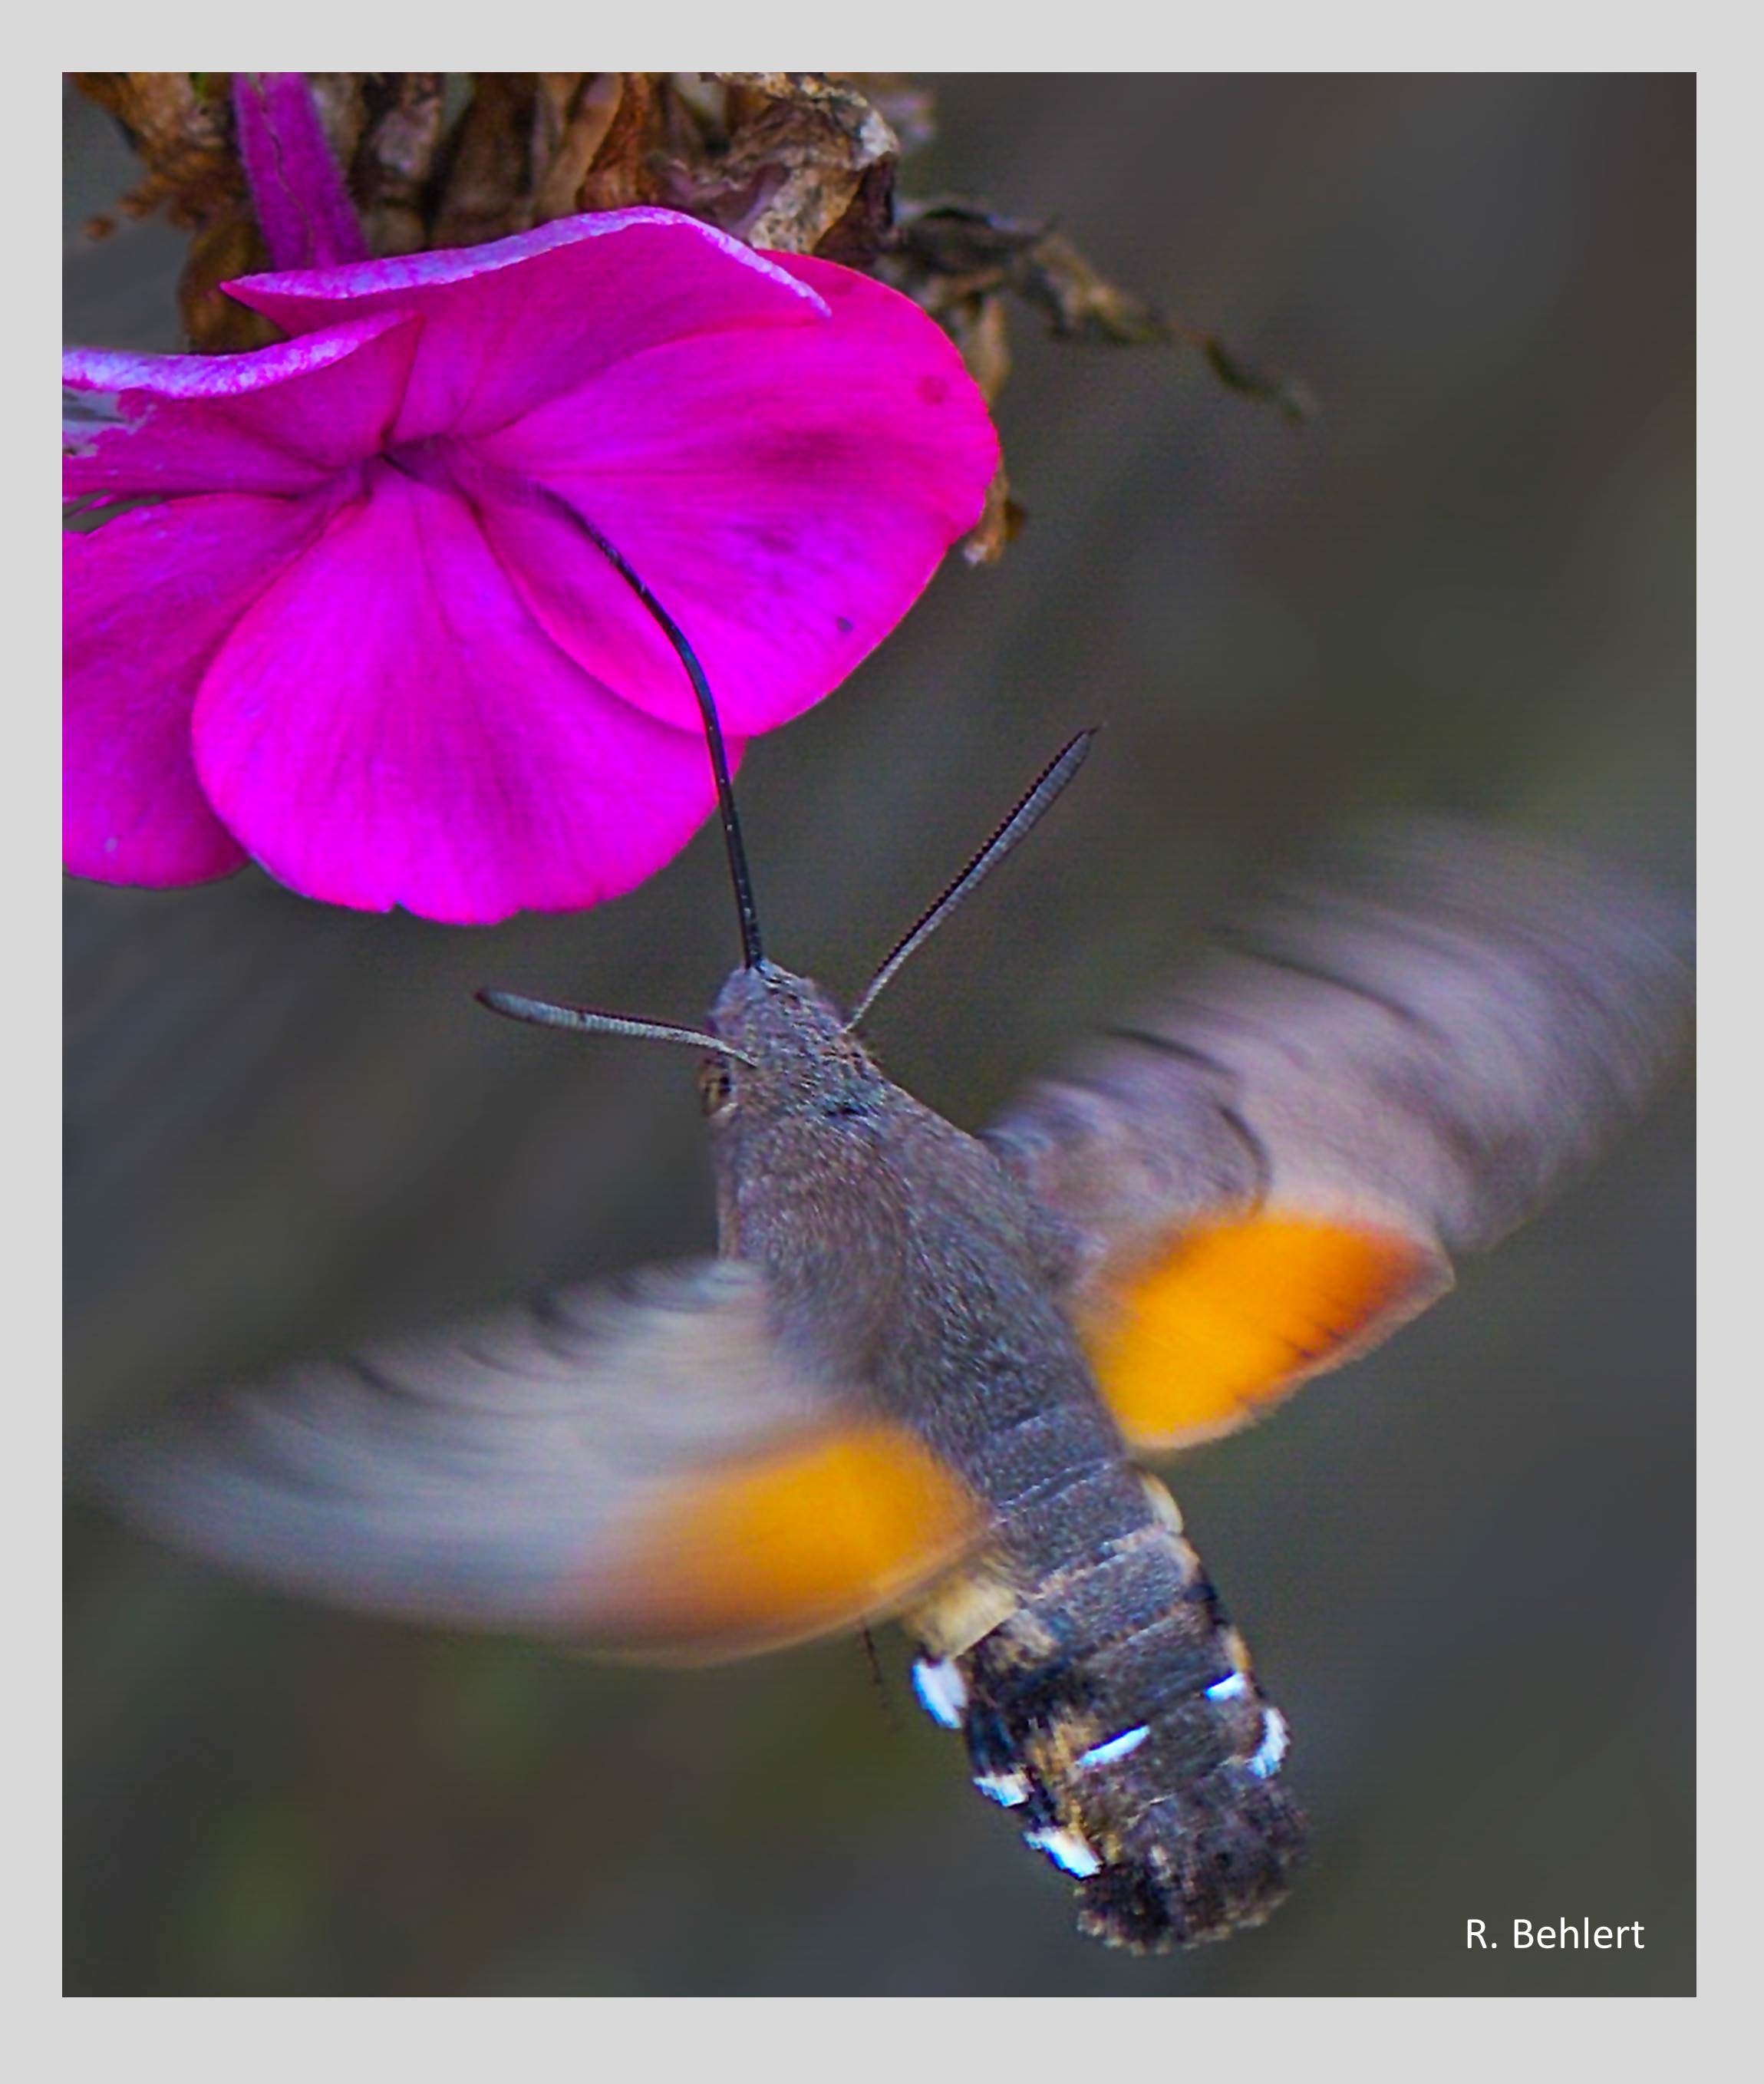 Der Hohe Phlox (Phlox paniculata) blüht von Juni bis September in viel-en Farben und Wuchshöhen. Sein Duft zieht Insekten magisch an. Das Taubenschwänzchen, ein Schwärmer unter den Schmetterlingen, saugt mit seinem 3 cm langen Rüssel Nektar aus der langen Blütenröhre. 